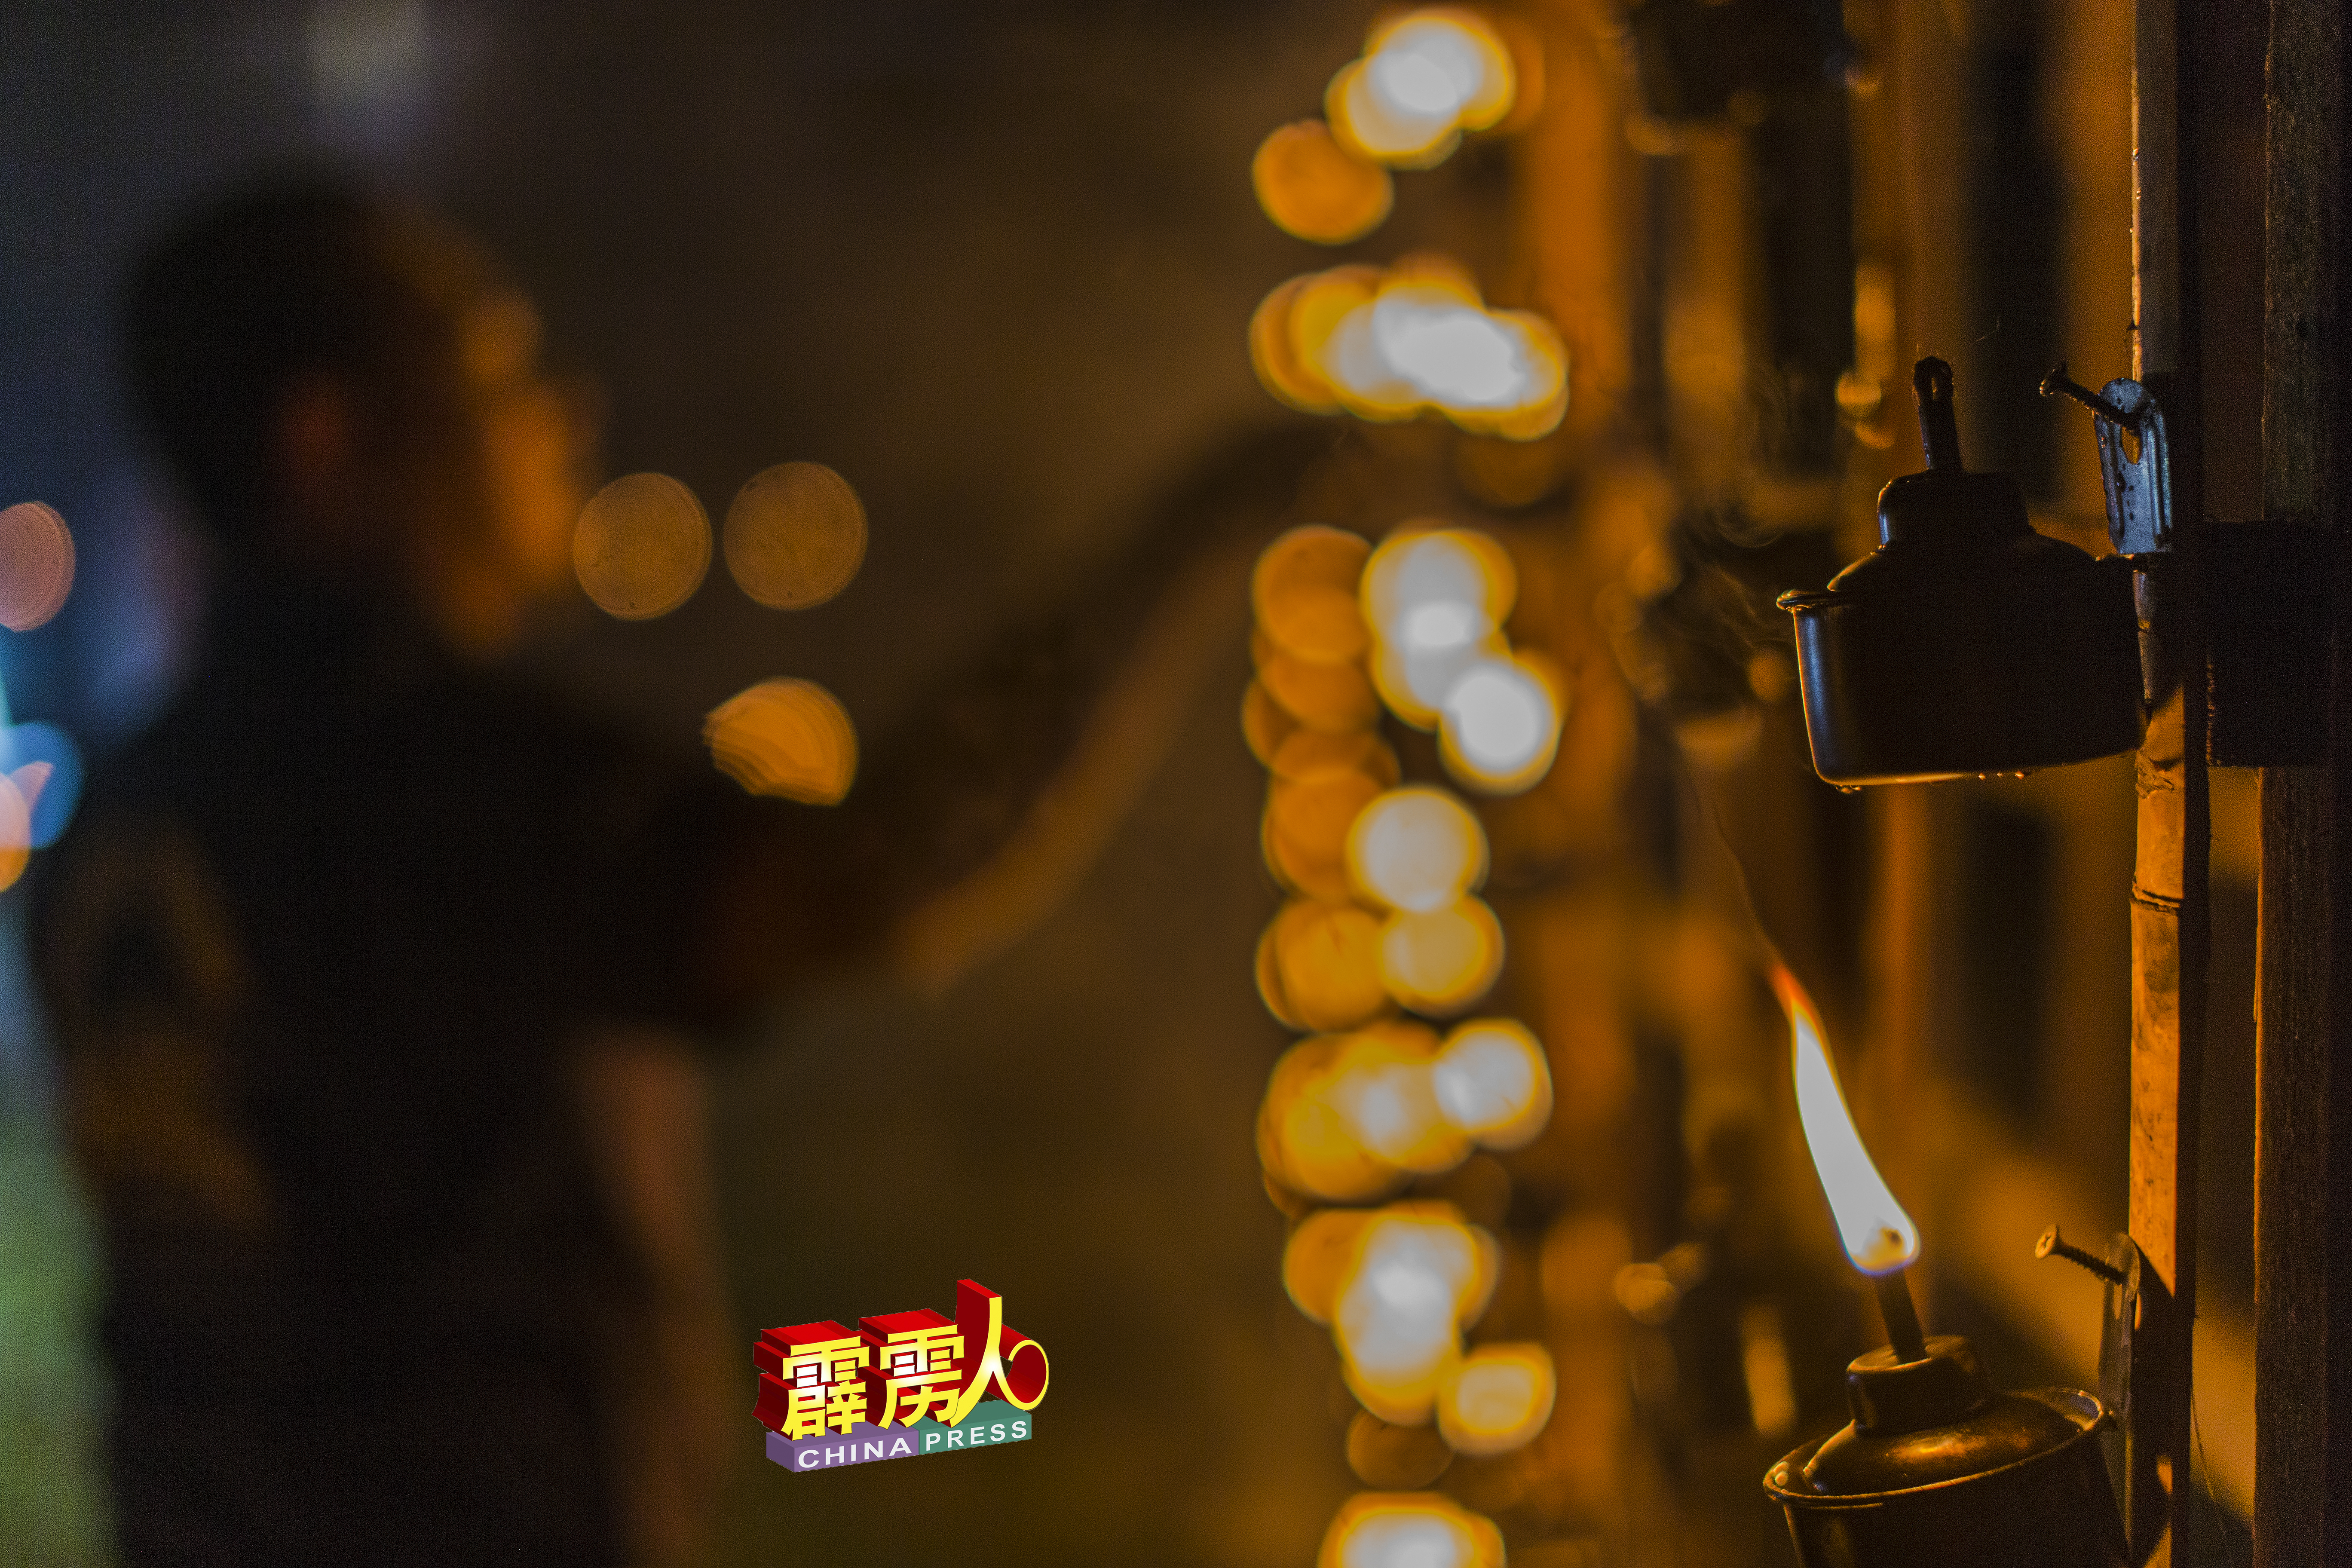 甘榜立布自2014年以点燃传统土油灯迎开斋闻名，也赢下至少5个土油灯比赛冠军。